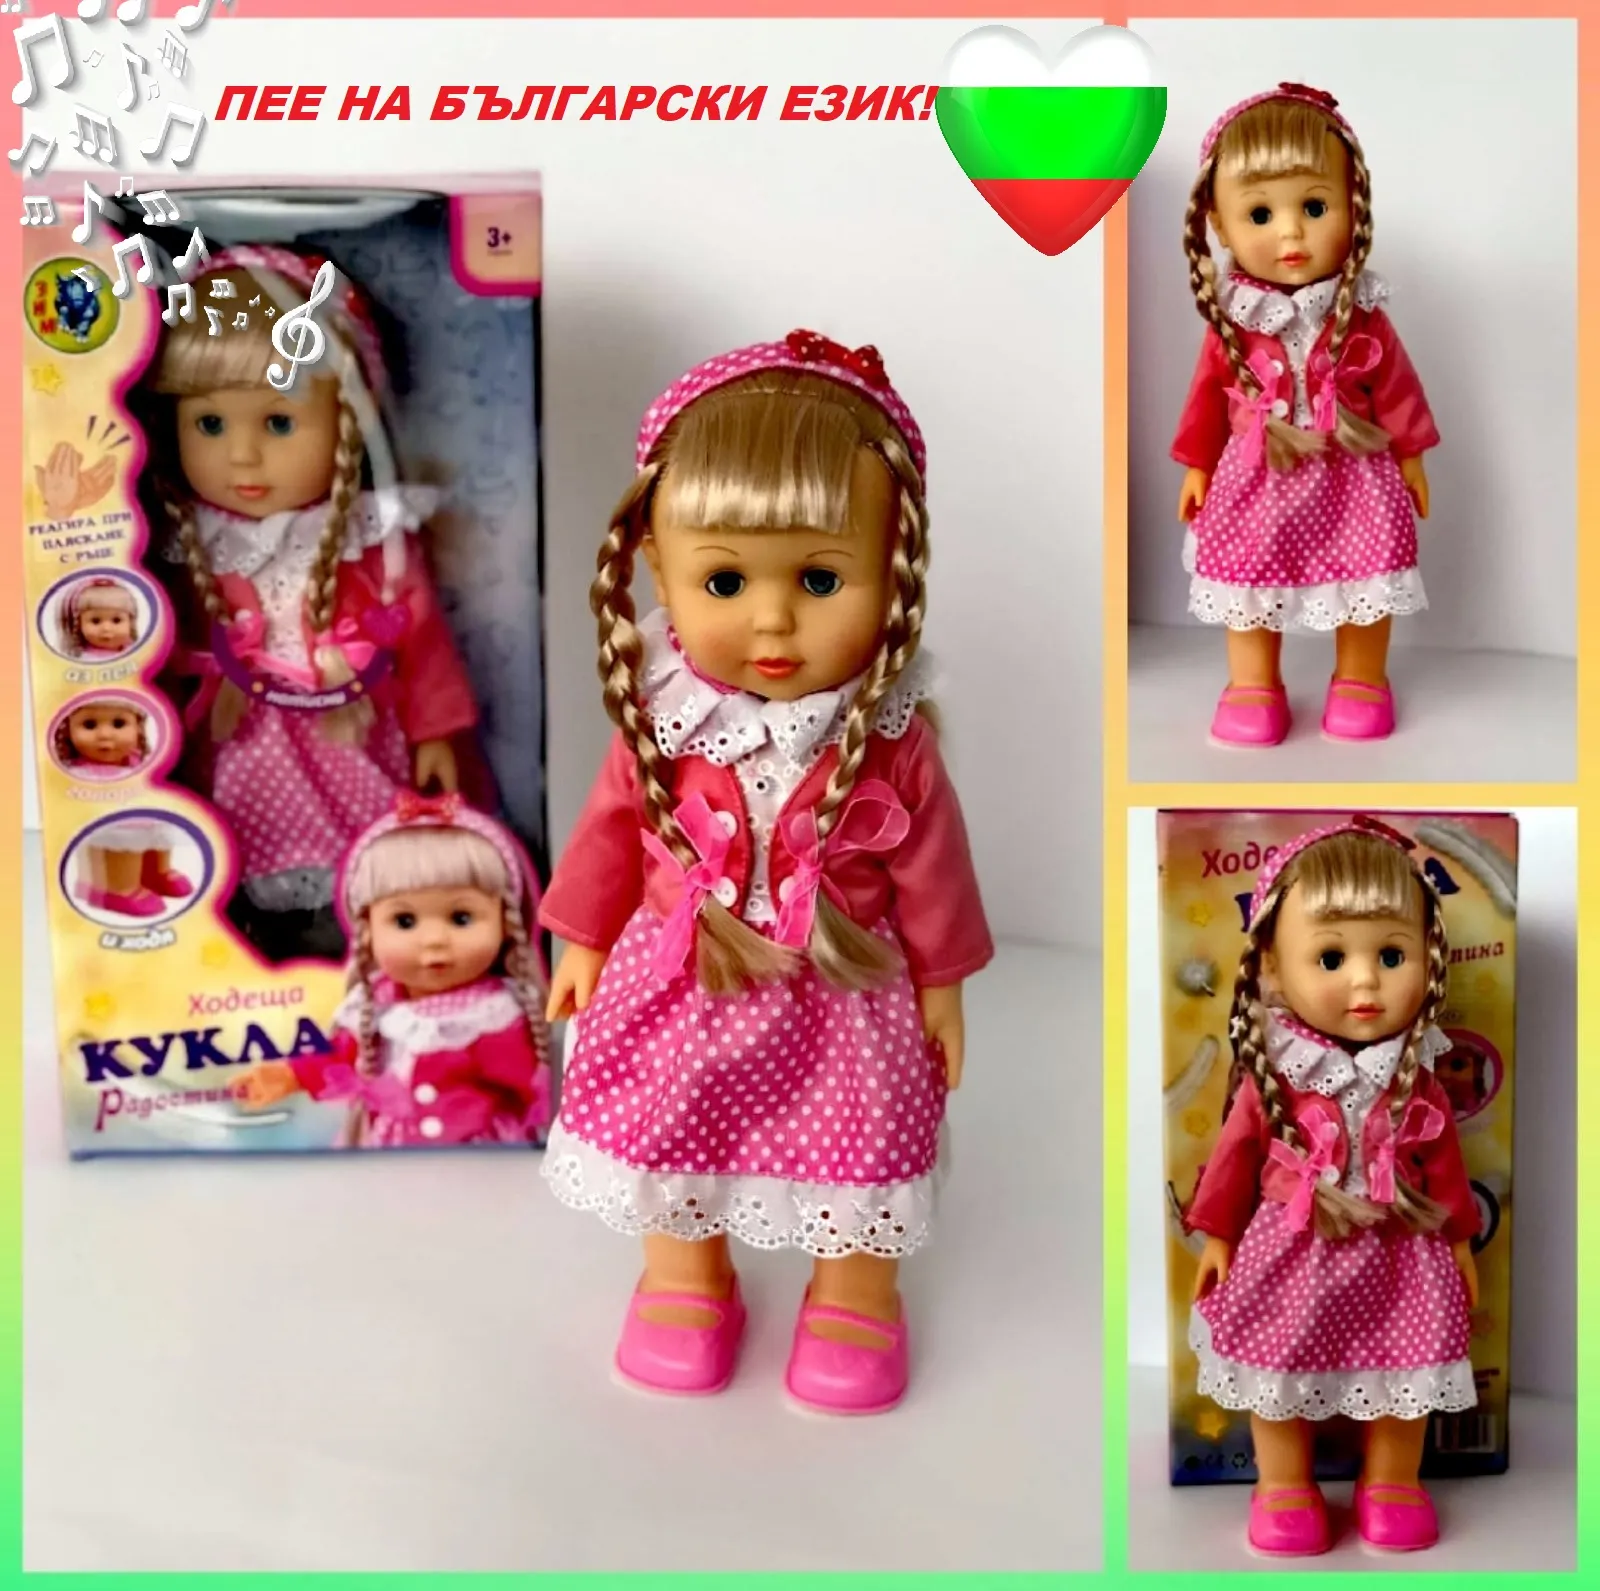 Интерактивна кукла Радостина, ходеща, пееща и говореща на БЪЛГАРСКИ ЕЗИК, височина 42см 2